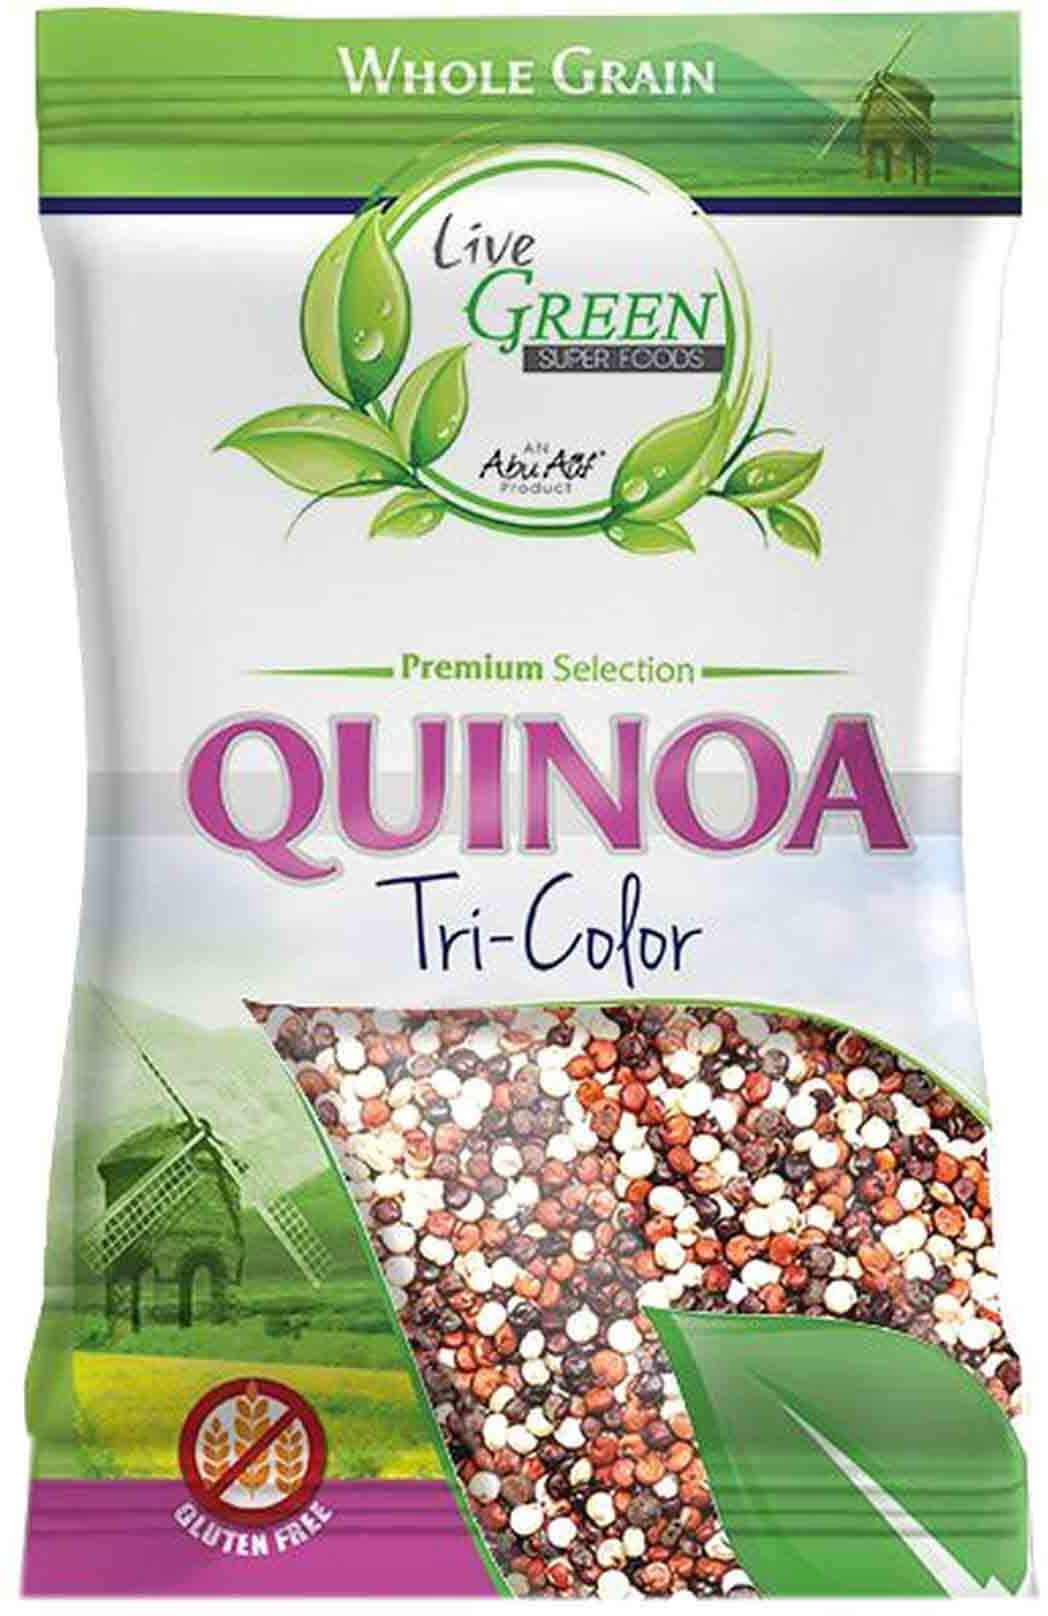 Live Green Tri-Colour Quinoa - 400 Gram